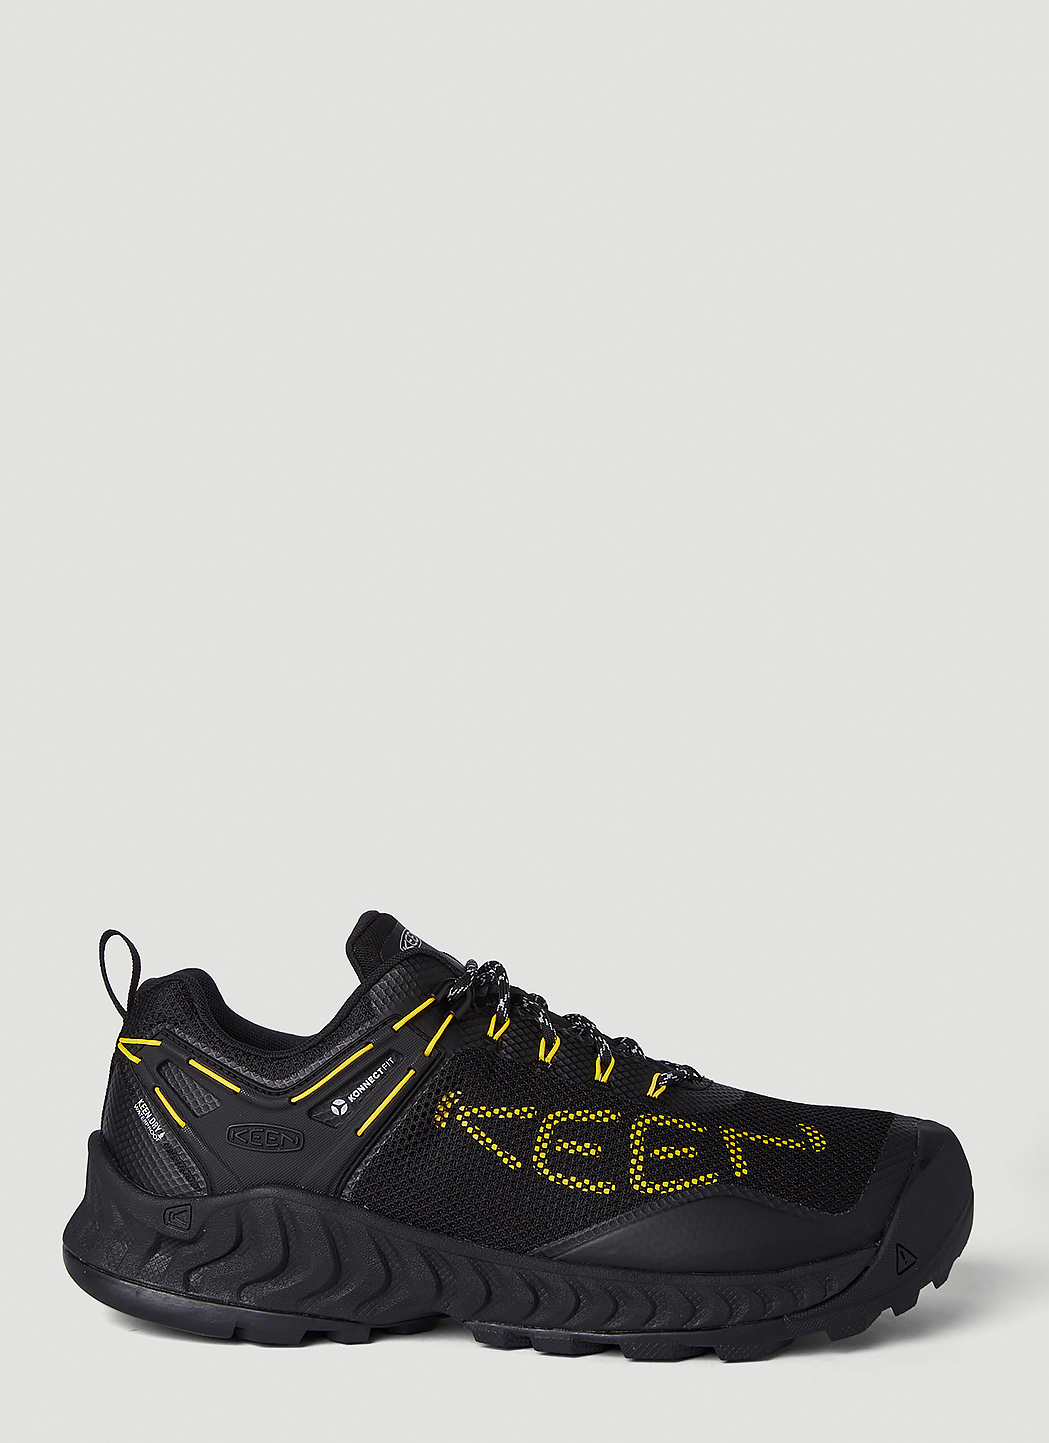 Nxis Evo Waterproof Sneakers